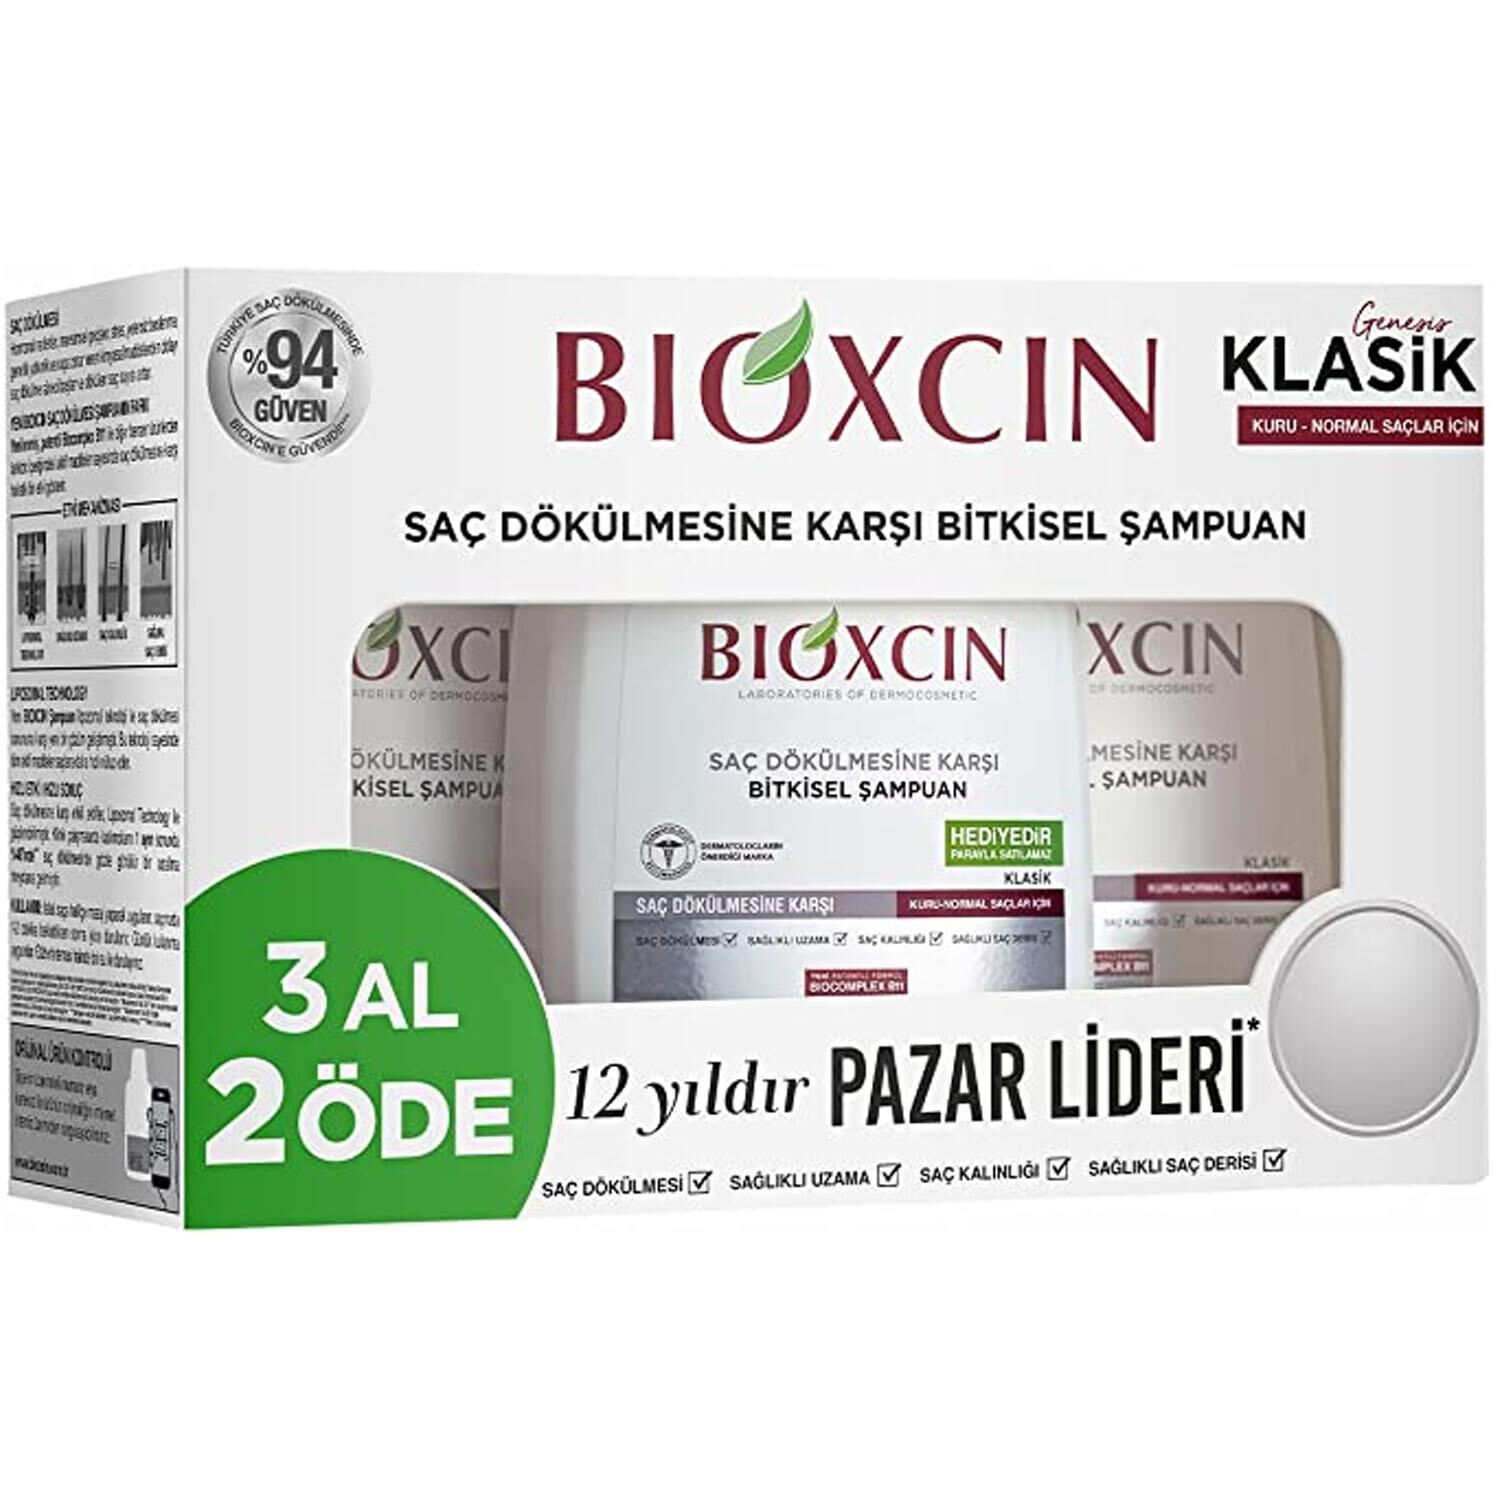 Bioxcin Klasik Kuru Ve Normal Saçlar İçin Şampuan 3 x 300 ml 3 Al 2 Öde